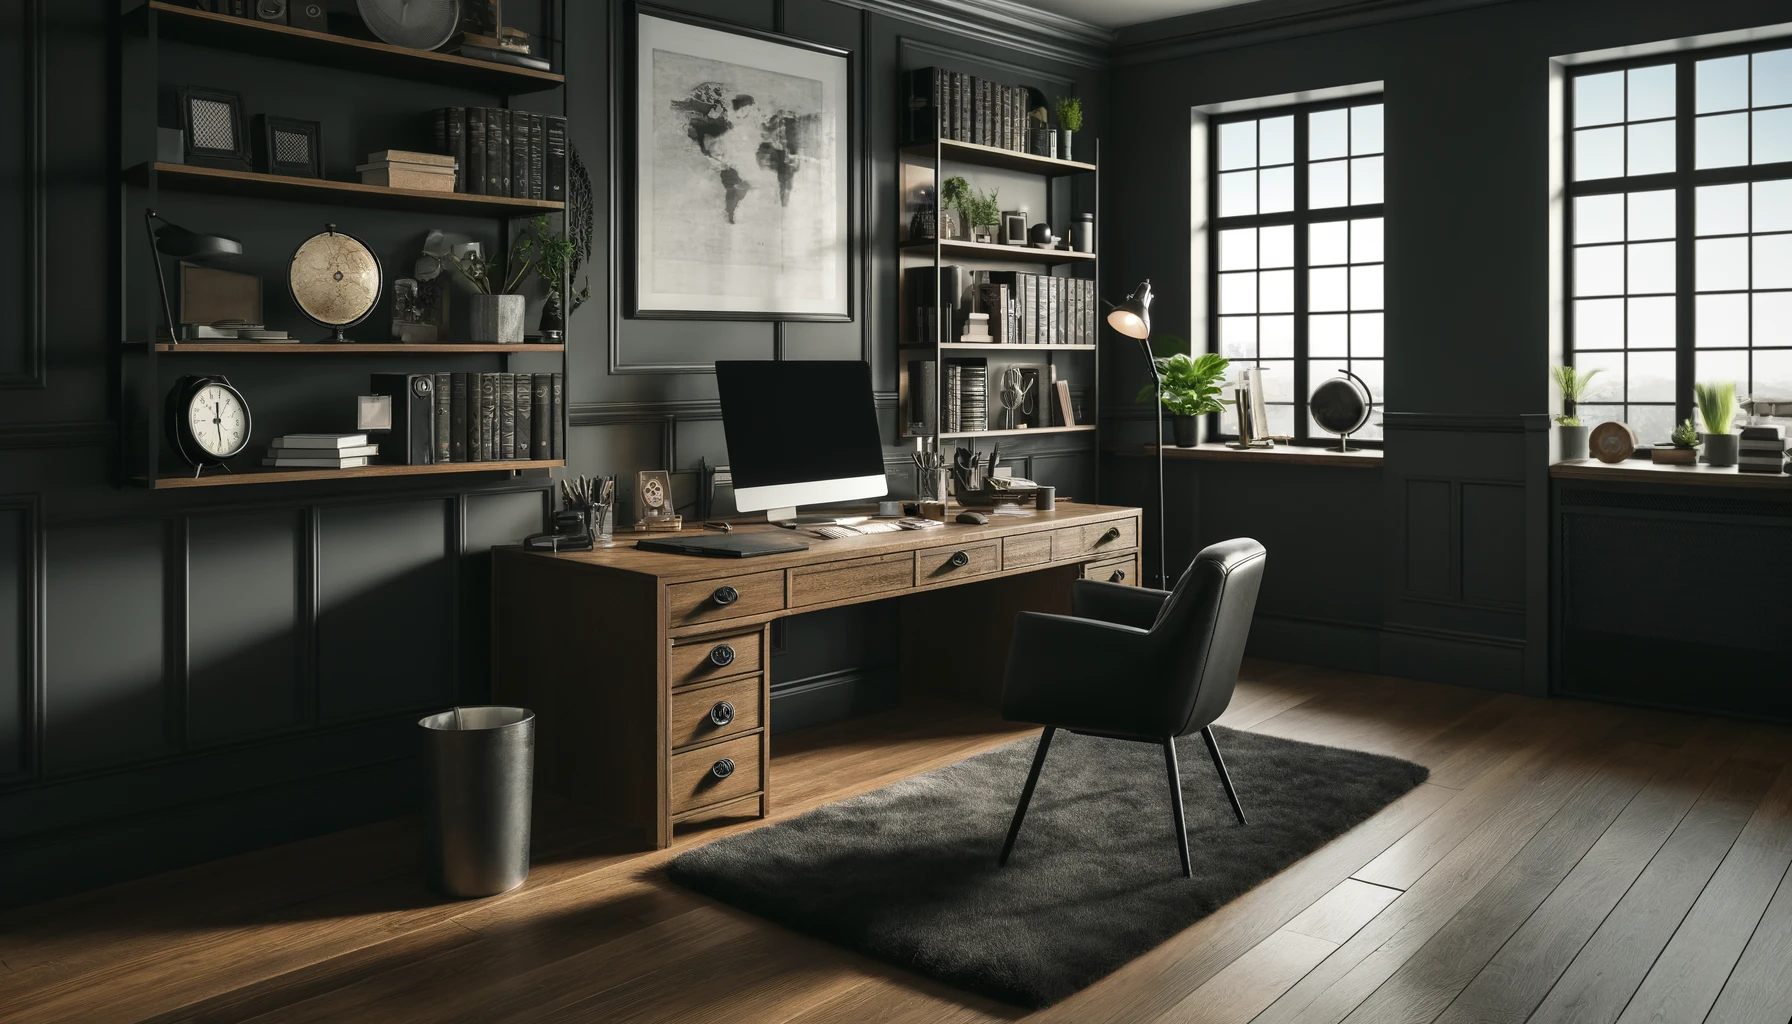 Arbejd effektivt og stilfuldt: Guide til valg af møbler til det maskuline hjemmekontor